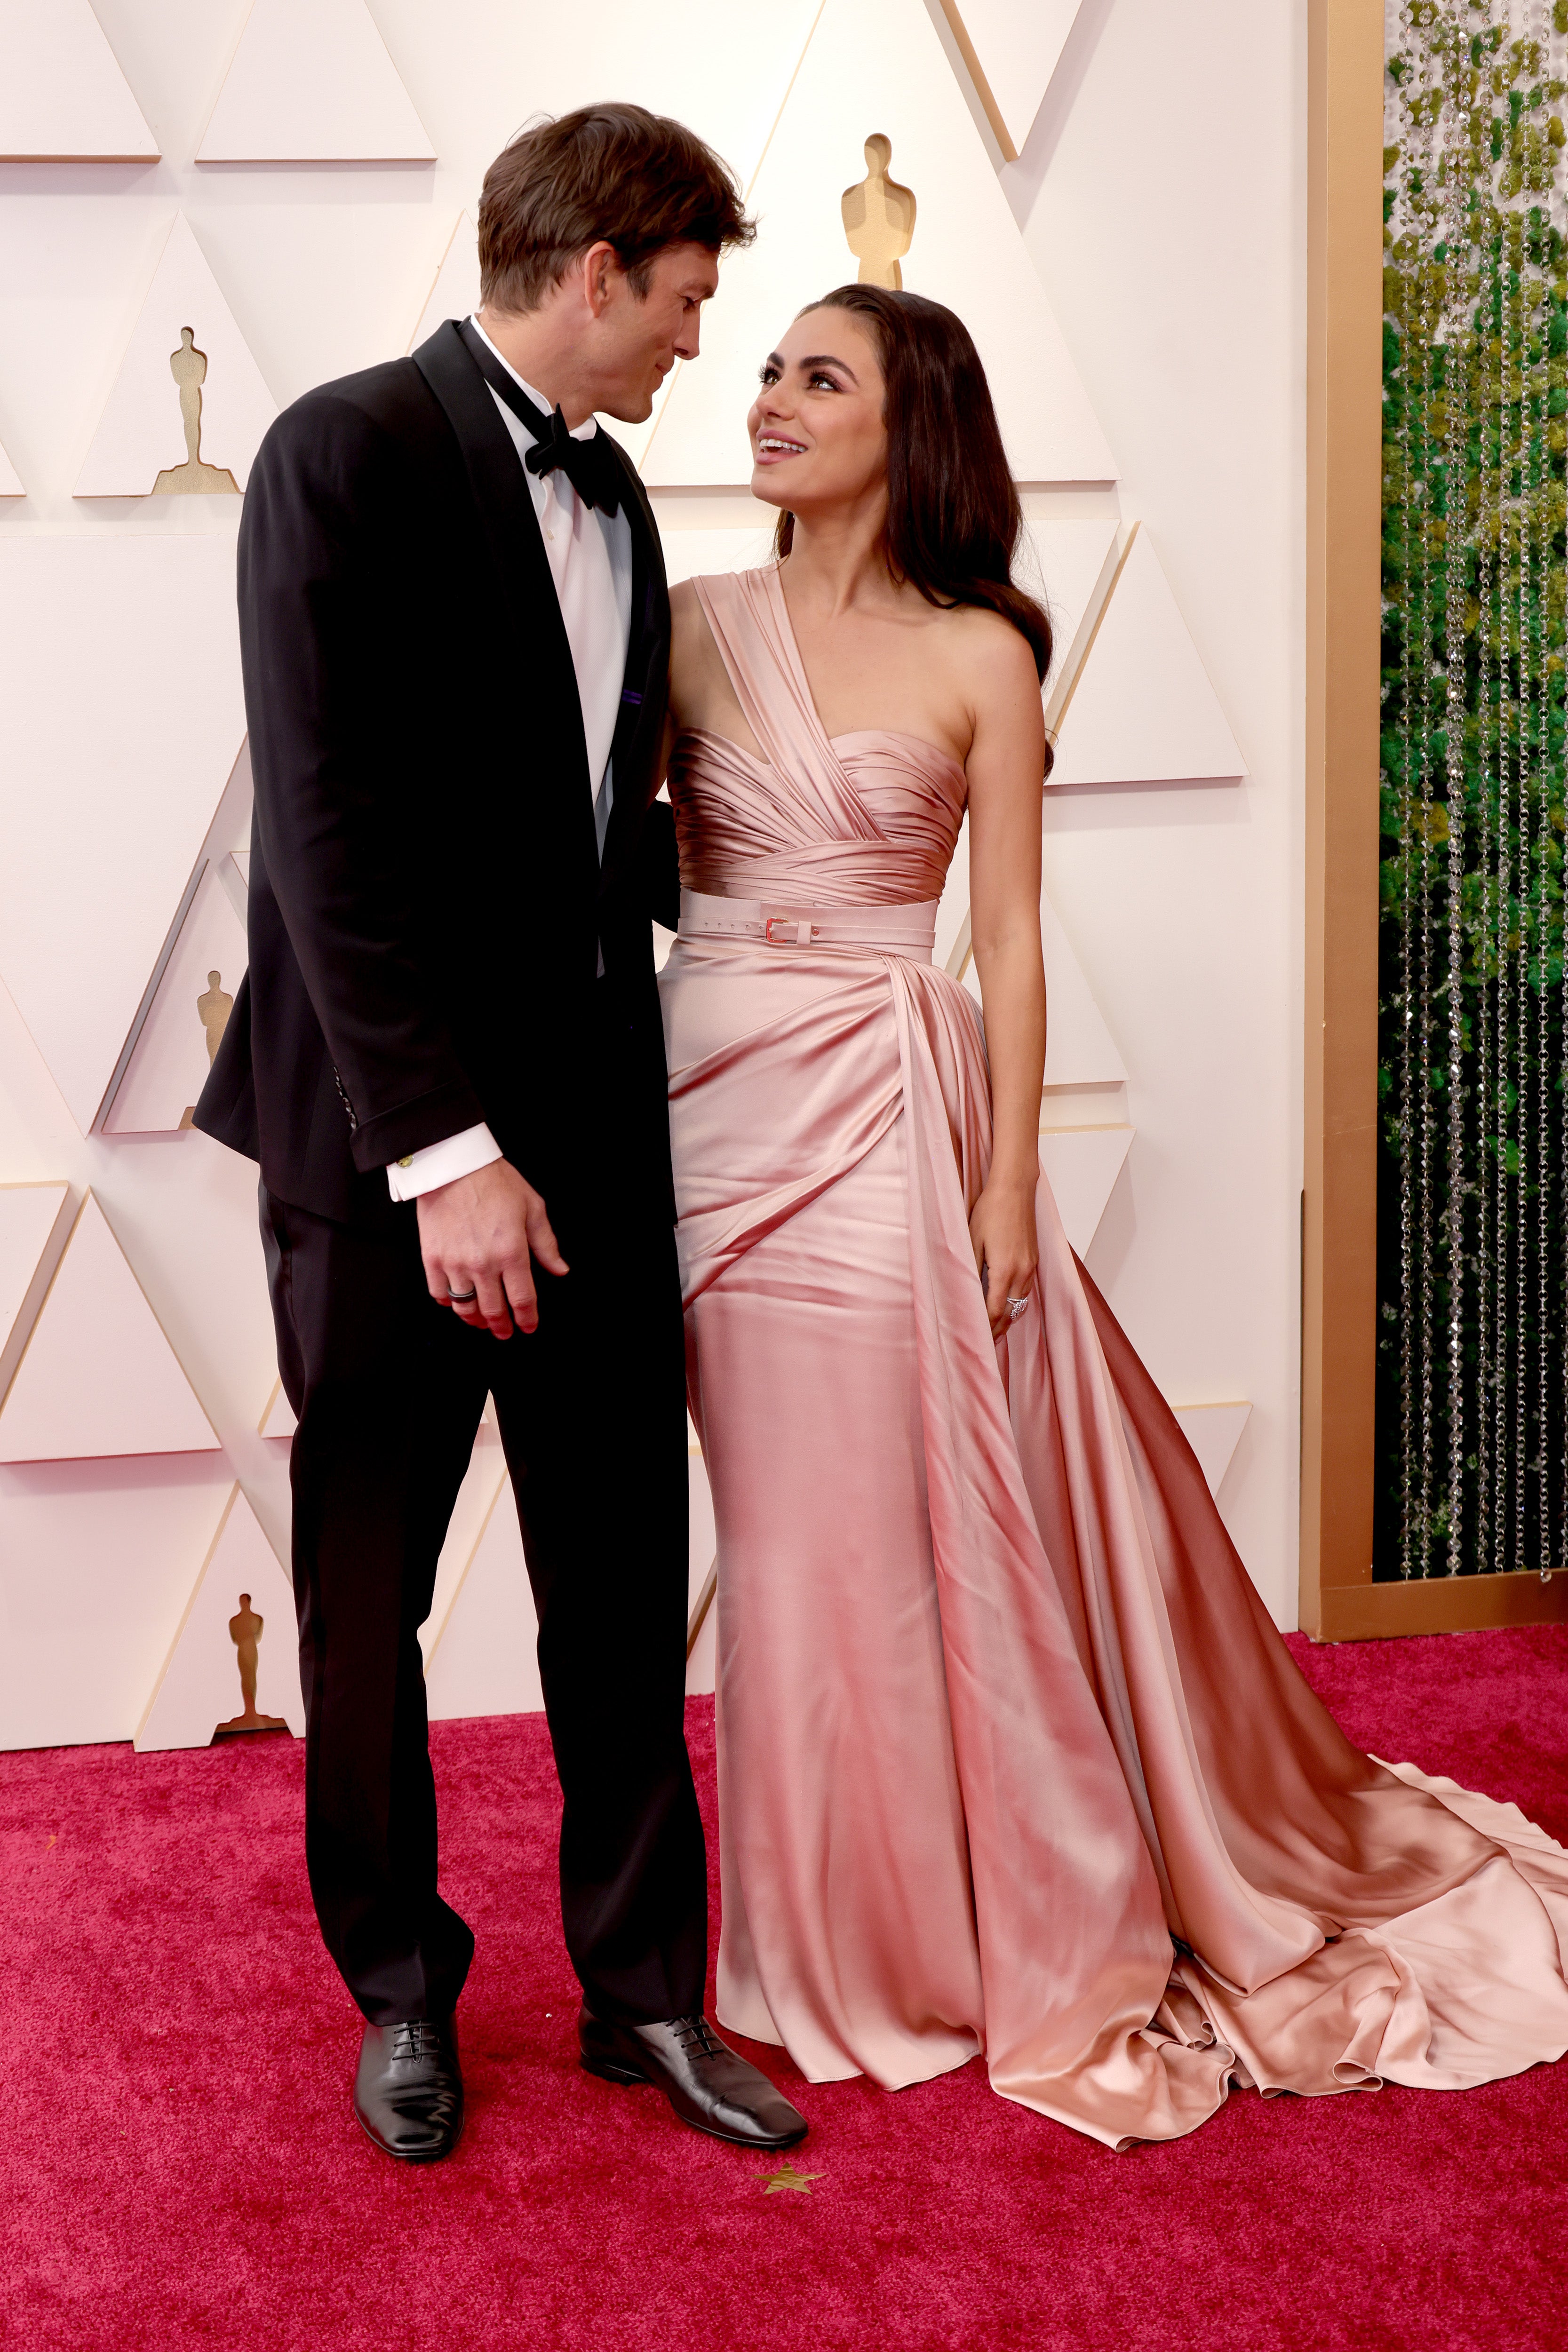 Ashton Kutcher and Mila Kunis make Oscars debut